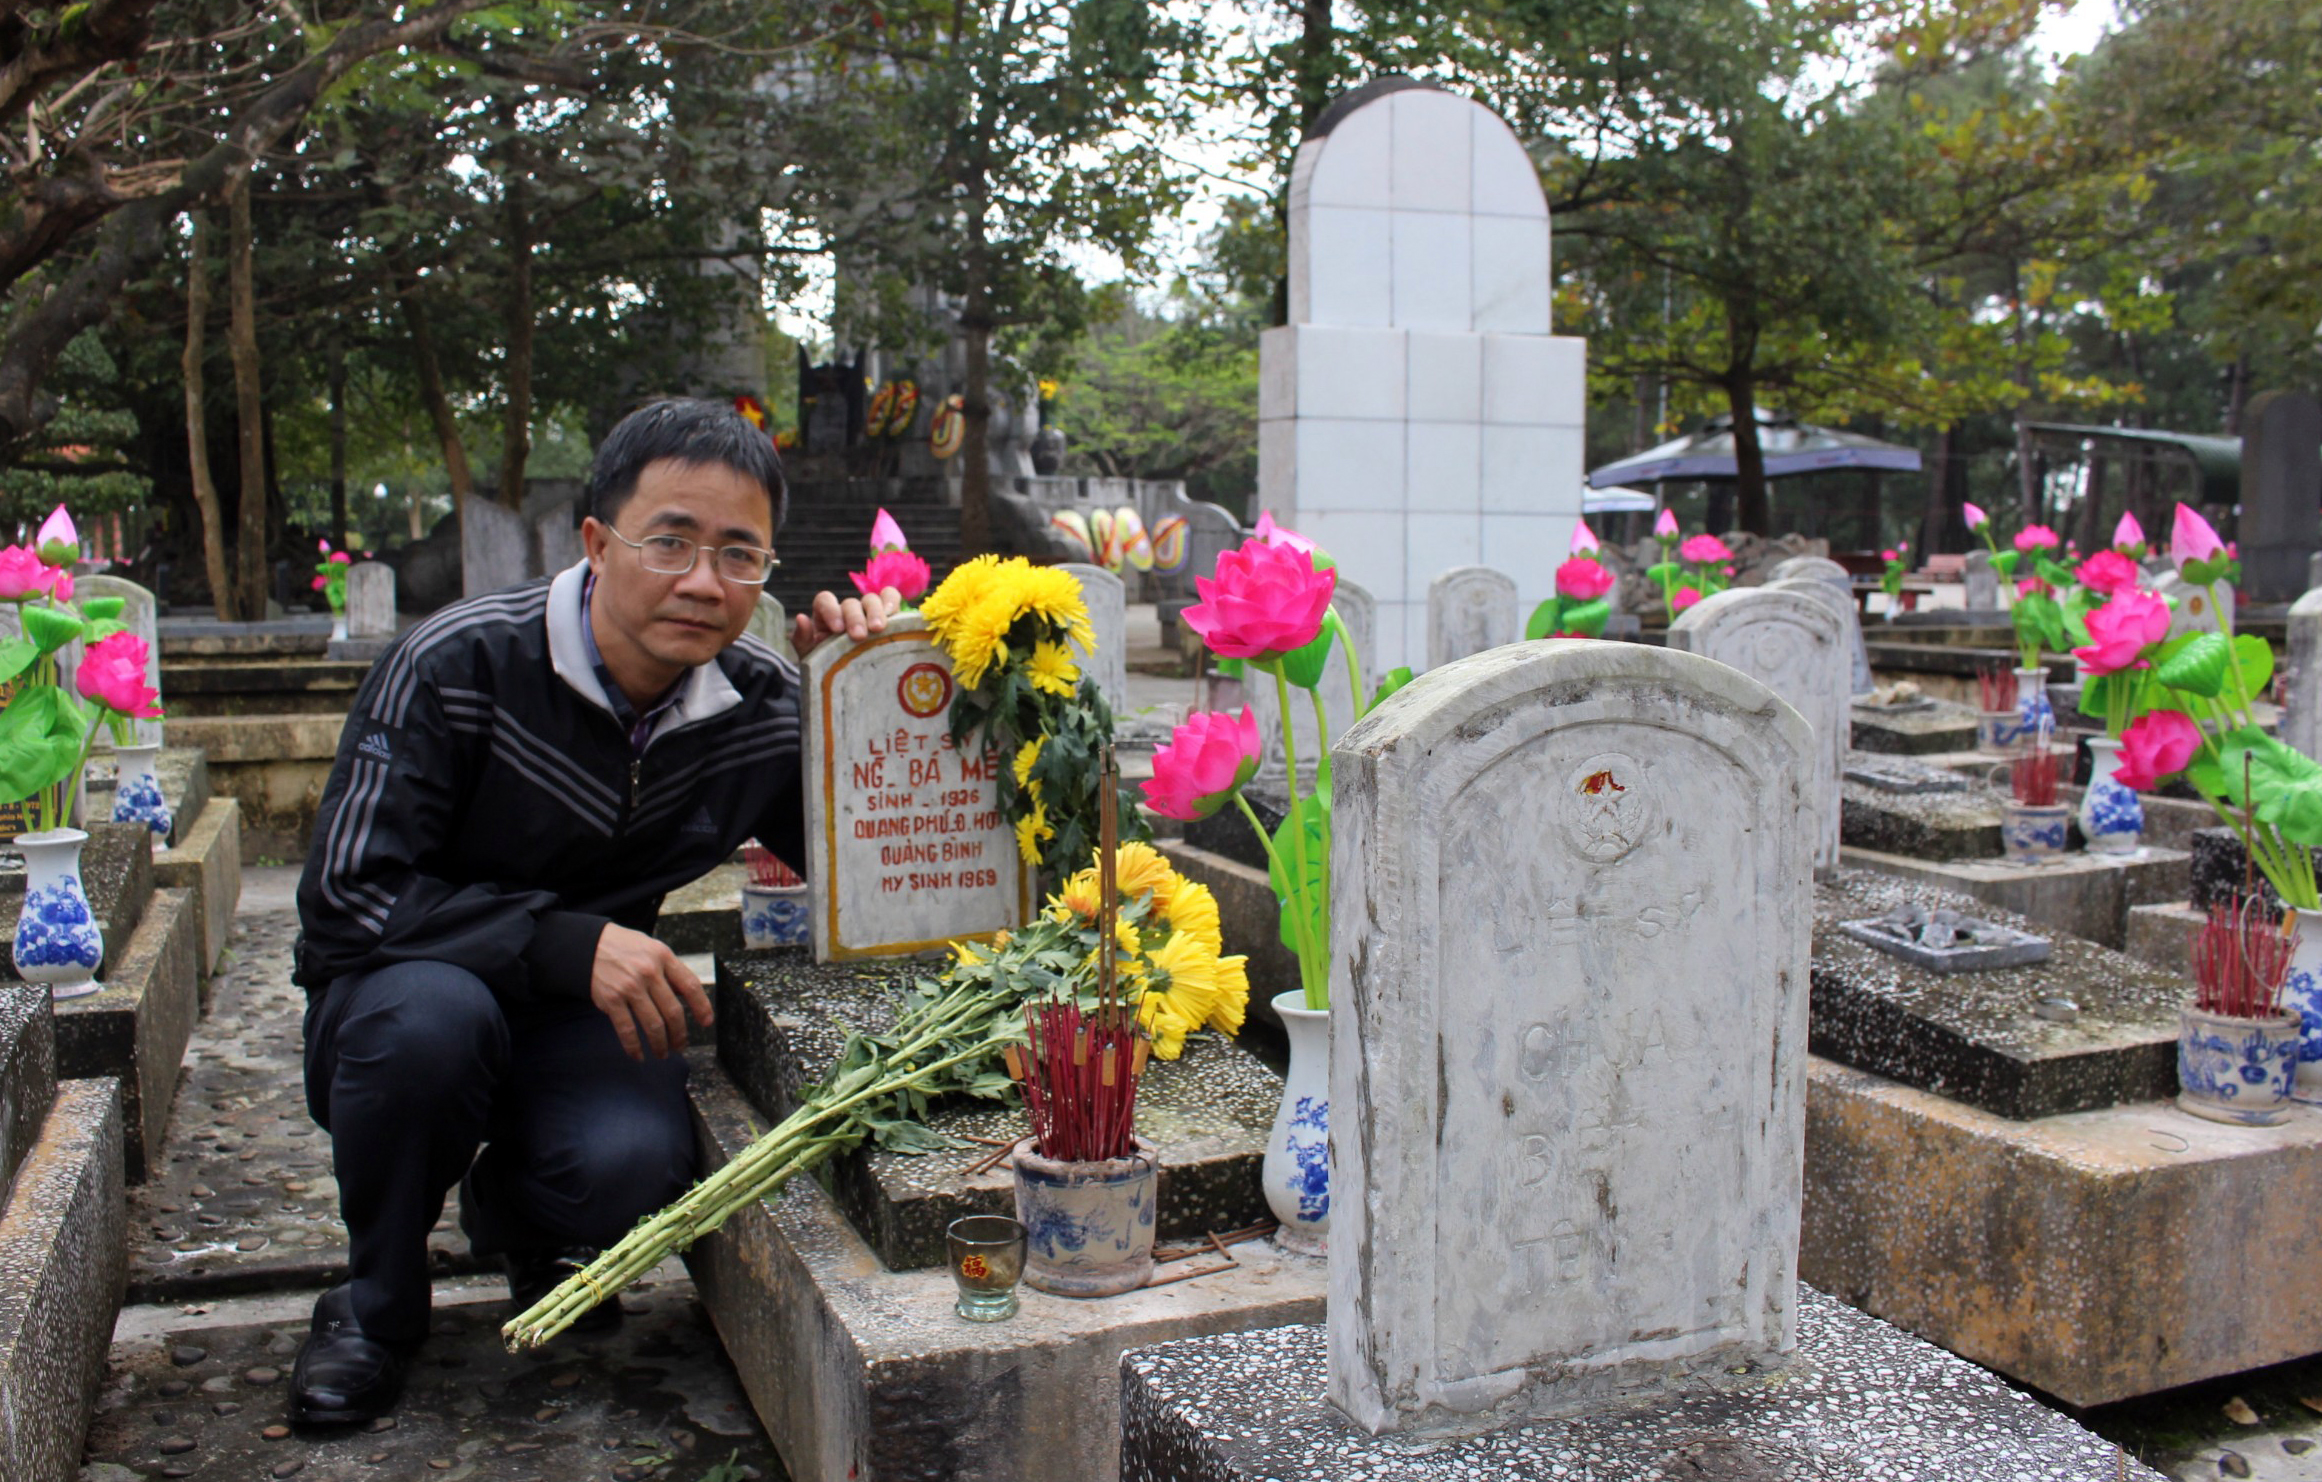 Phần mộ liệt sỹ Nguyễn Bá Mễ tại Nghĩa trang liệt sỹ quốc gia Trường Sơn trước đây gia đình anh Nguyễn Văn Ước “nhận” thờ phụng thông qua ngoại cảm.